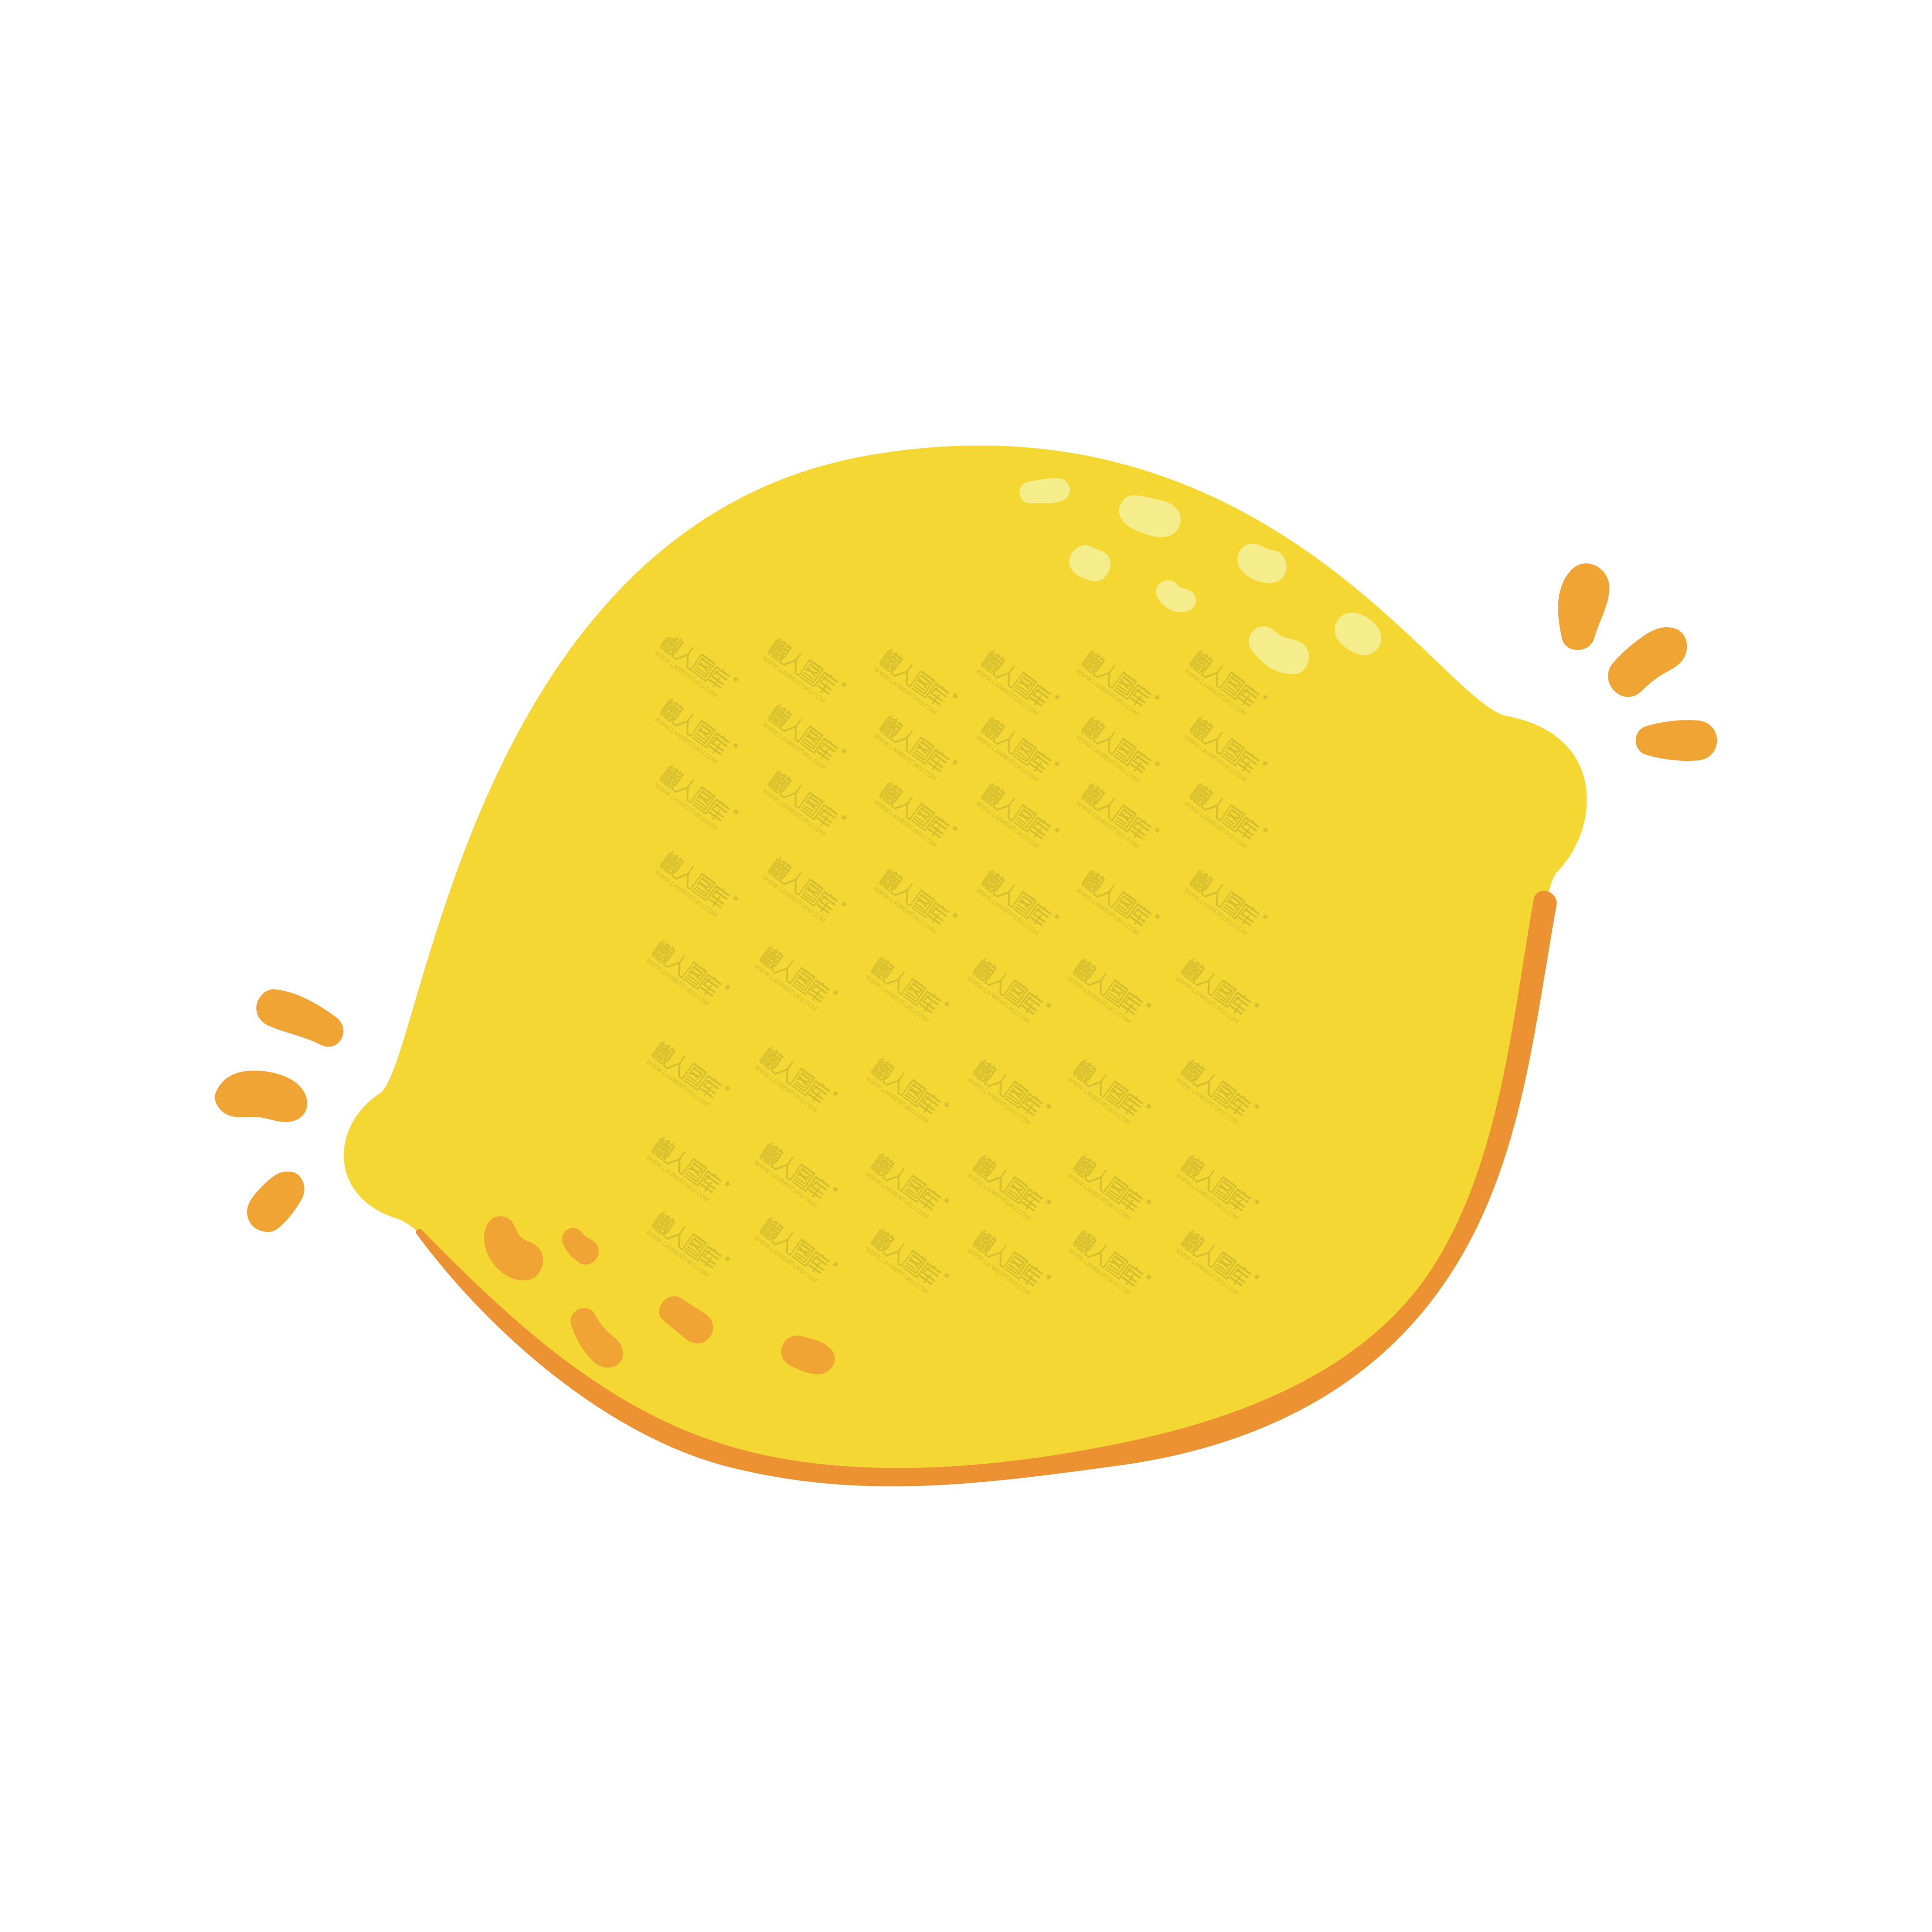 柠檬素材